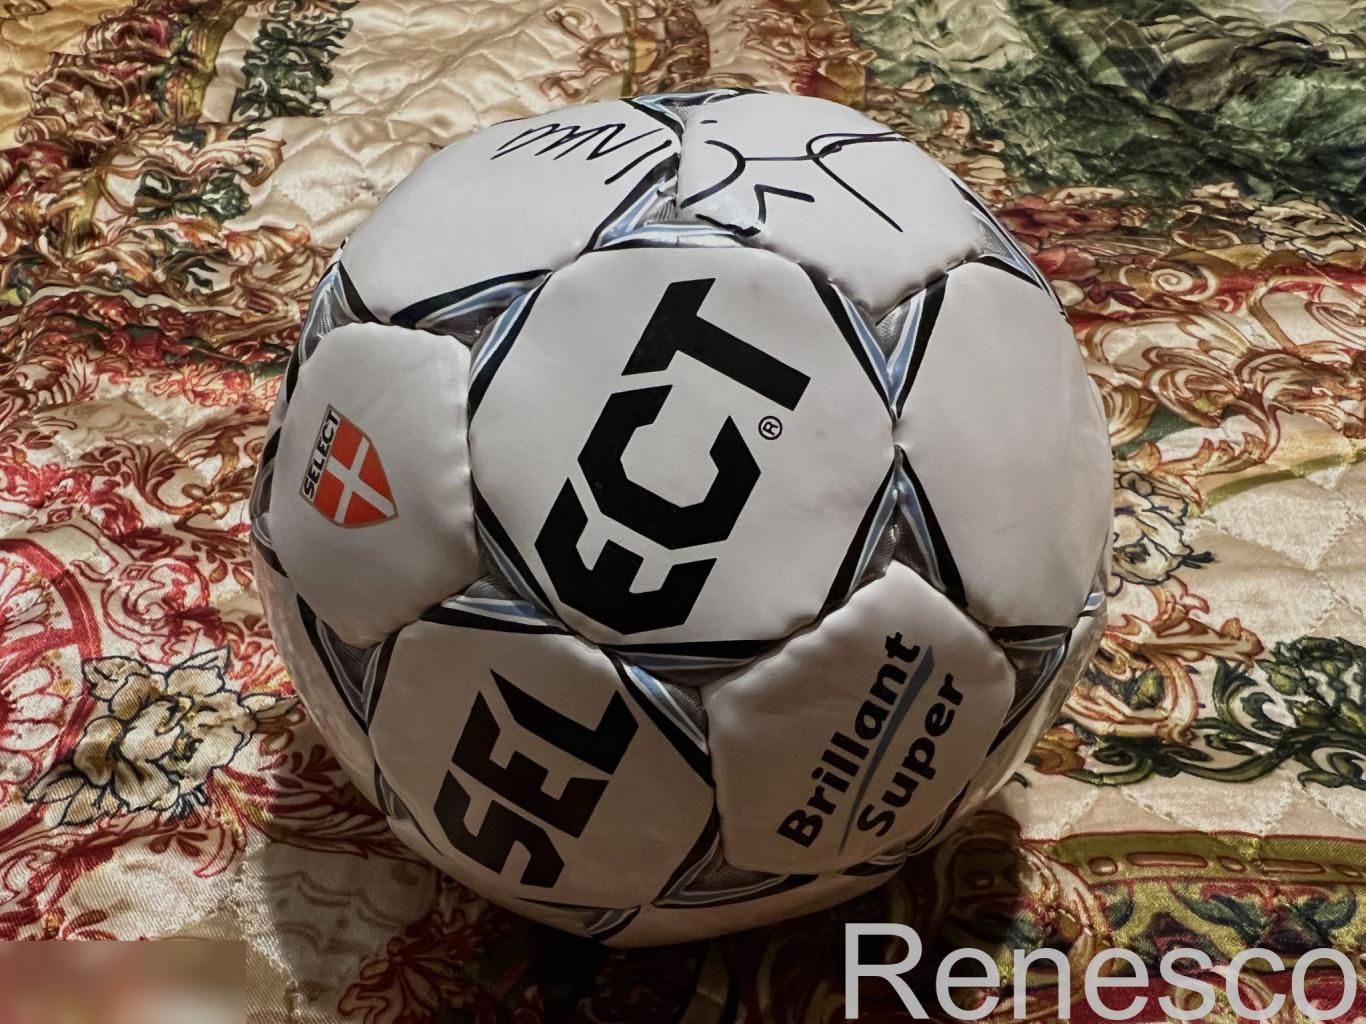 Автограф Эдгара Давидса (Edgar Davids) на футбольном мяче. 1